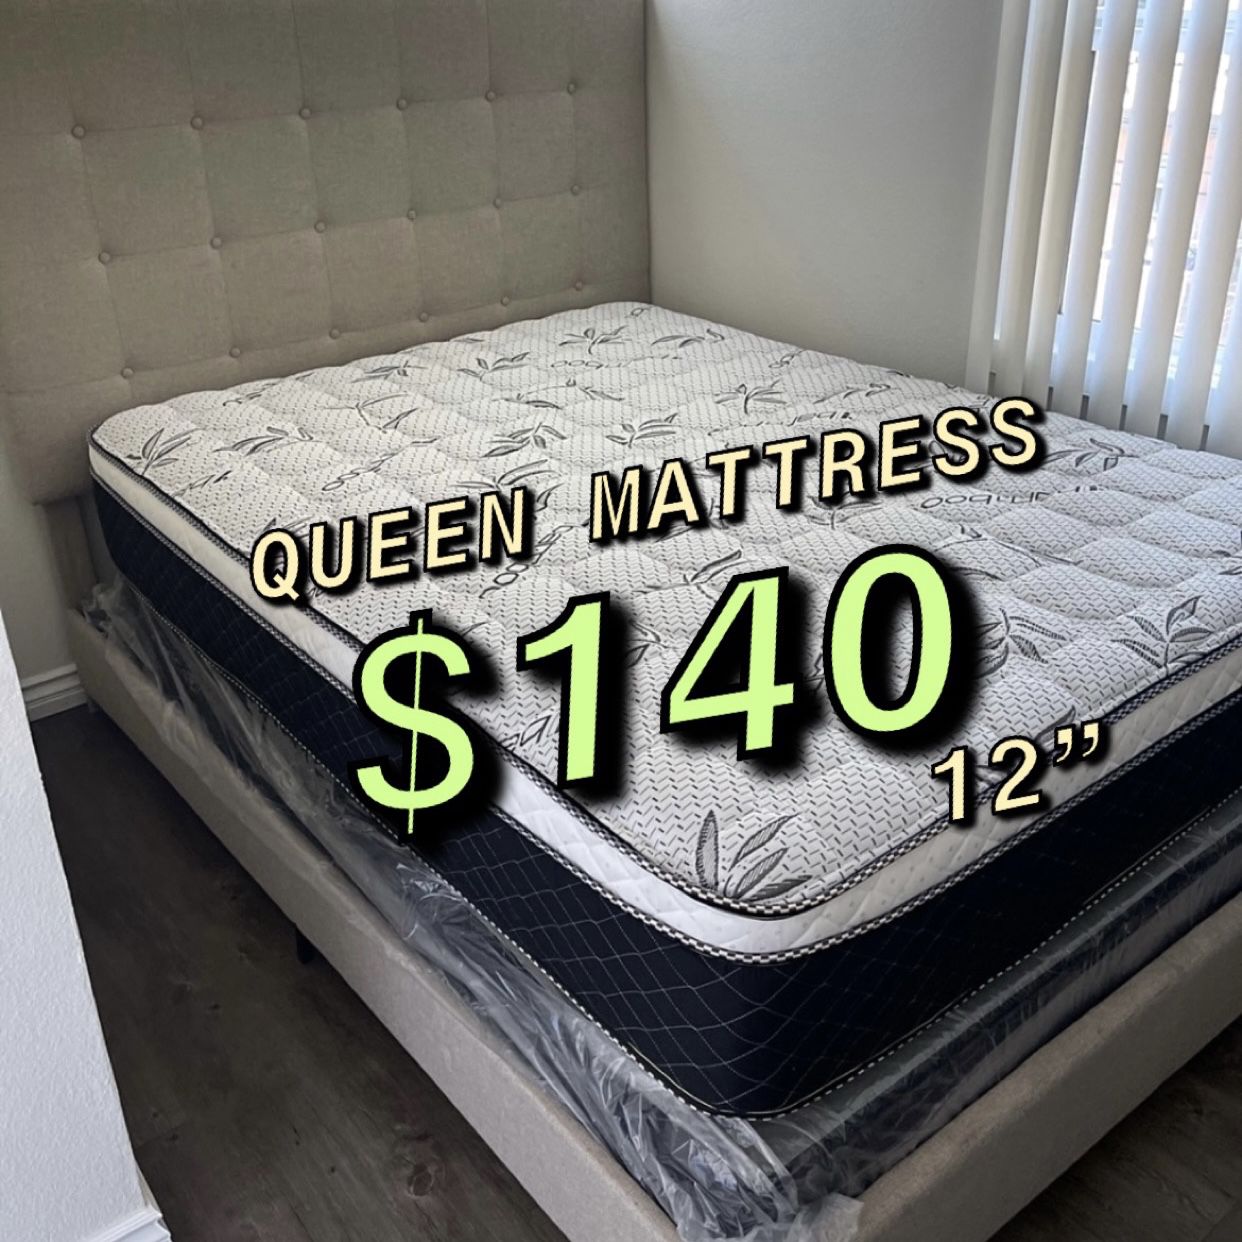 Queen Mattress $140